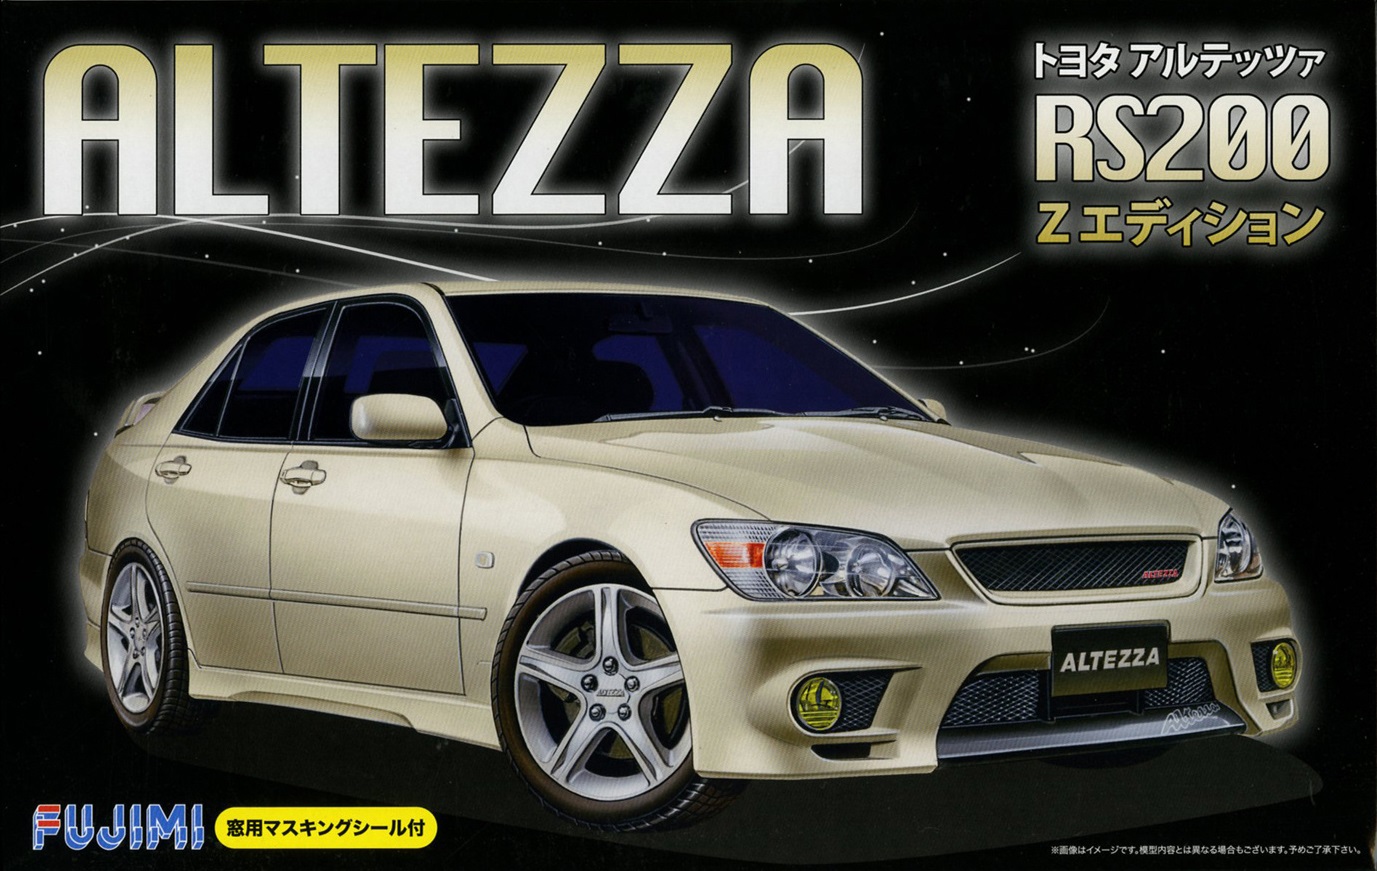 03950  автомобили и мотоциклы  Toyota Altezza RS200 Z Edition  (1:24)